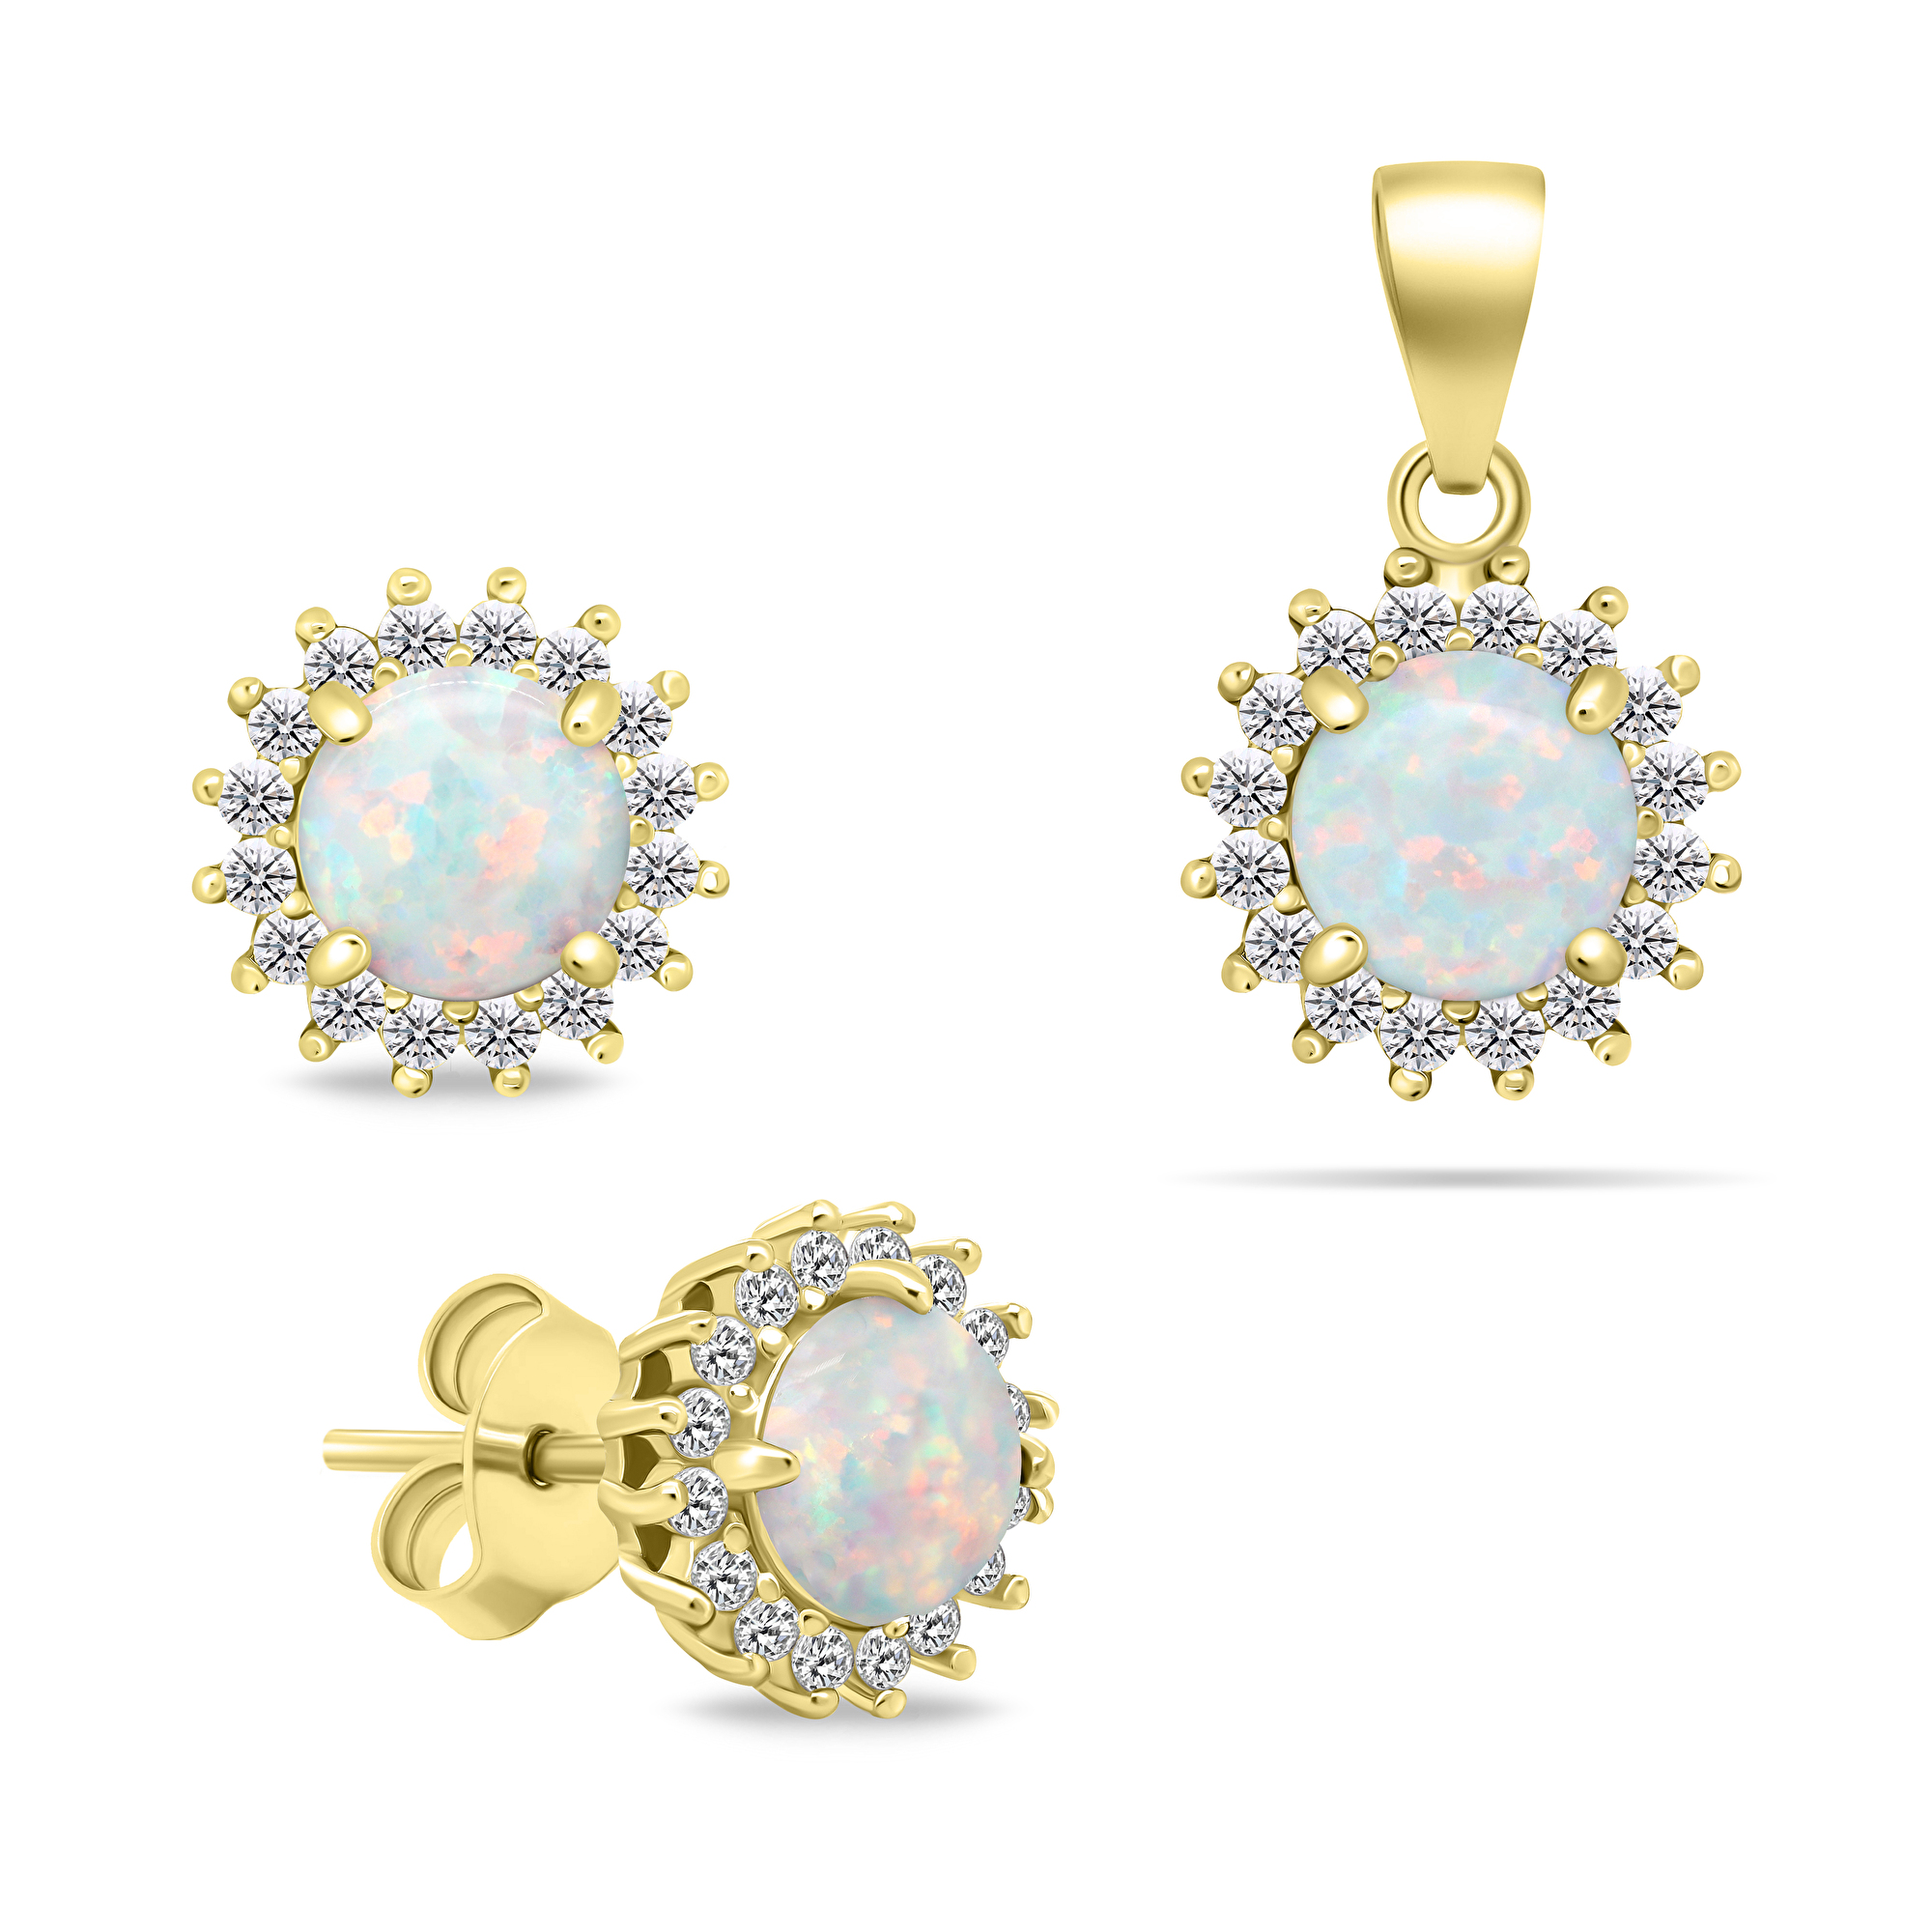 Brilio Silver Nádherný pozlacený set šperků s opály SET231Y (náušnice, přívěsek)